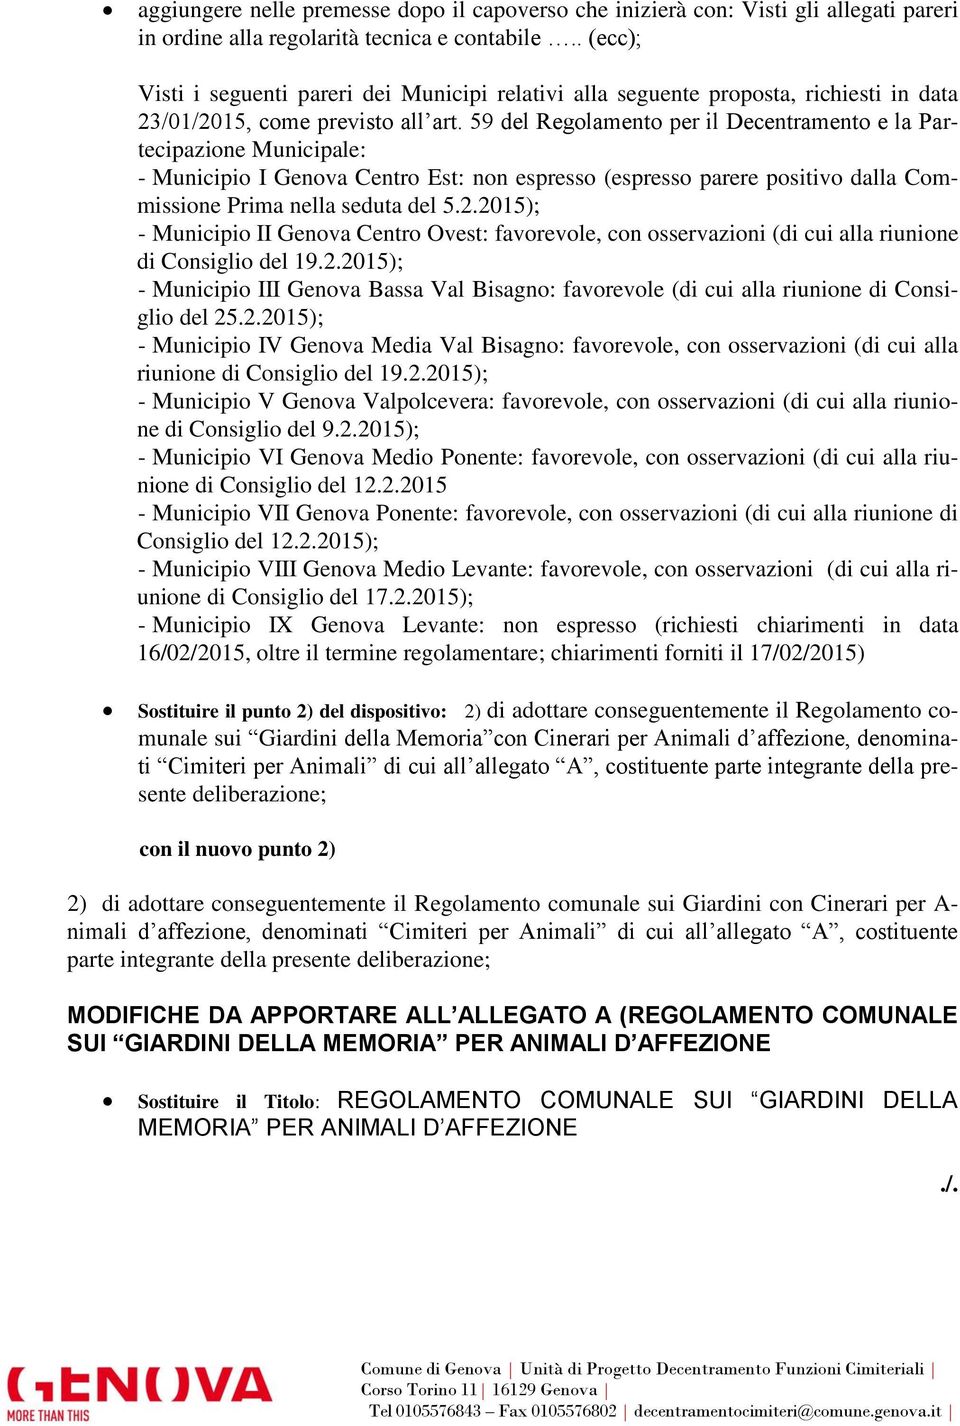 59 del Regolamento per il Decentramento e la Partecipazione Municipale: - Municipio I Genova Centro Est: non espresso (espresso parere positivo dalla Commissione Prima nella seduta del 5.2.